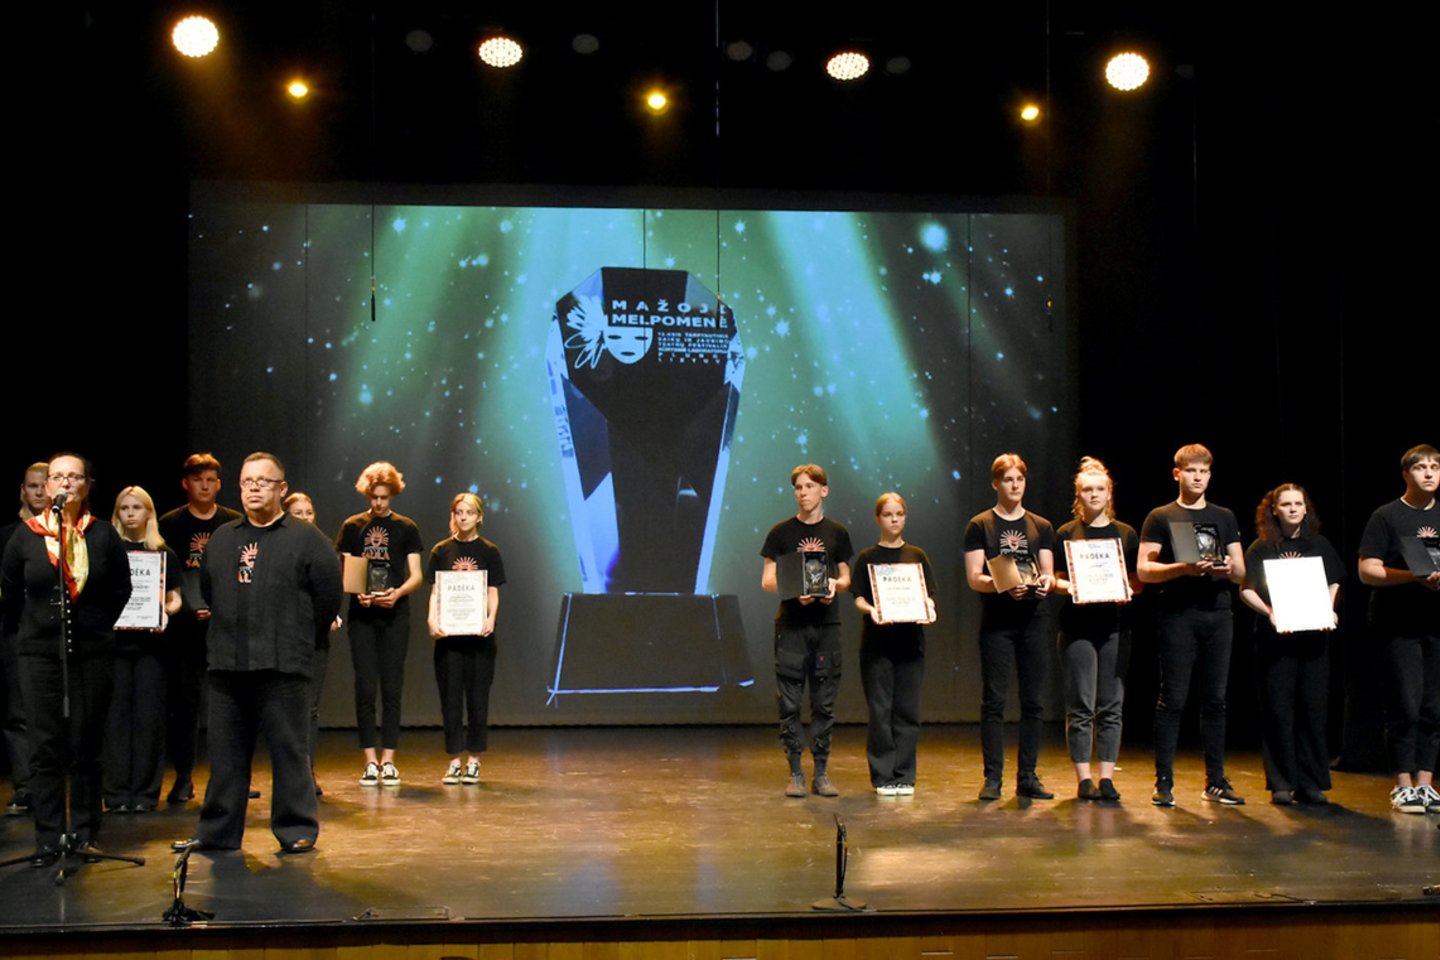 Dvyliktą kartą Plungėje vyko Tarptautinis teatrų festivalis-kūrybinė laboratorija „Mažoji Melpomenė“. 